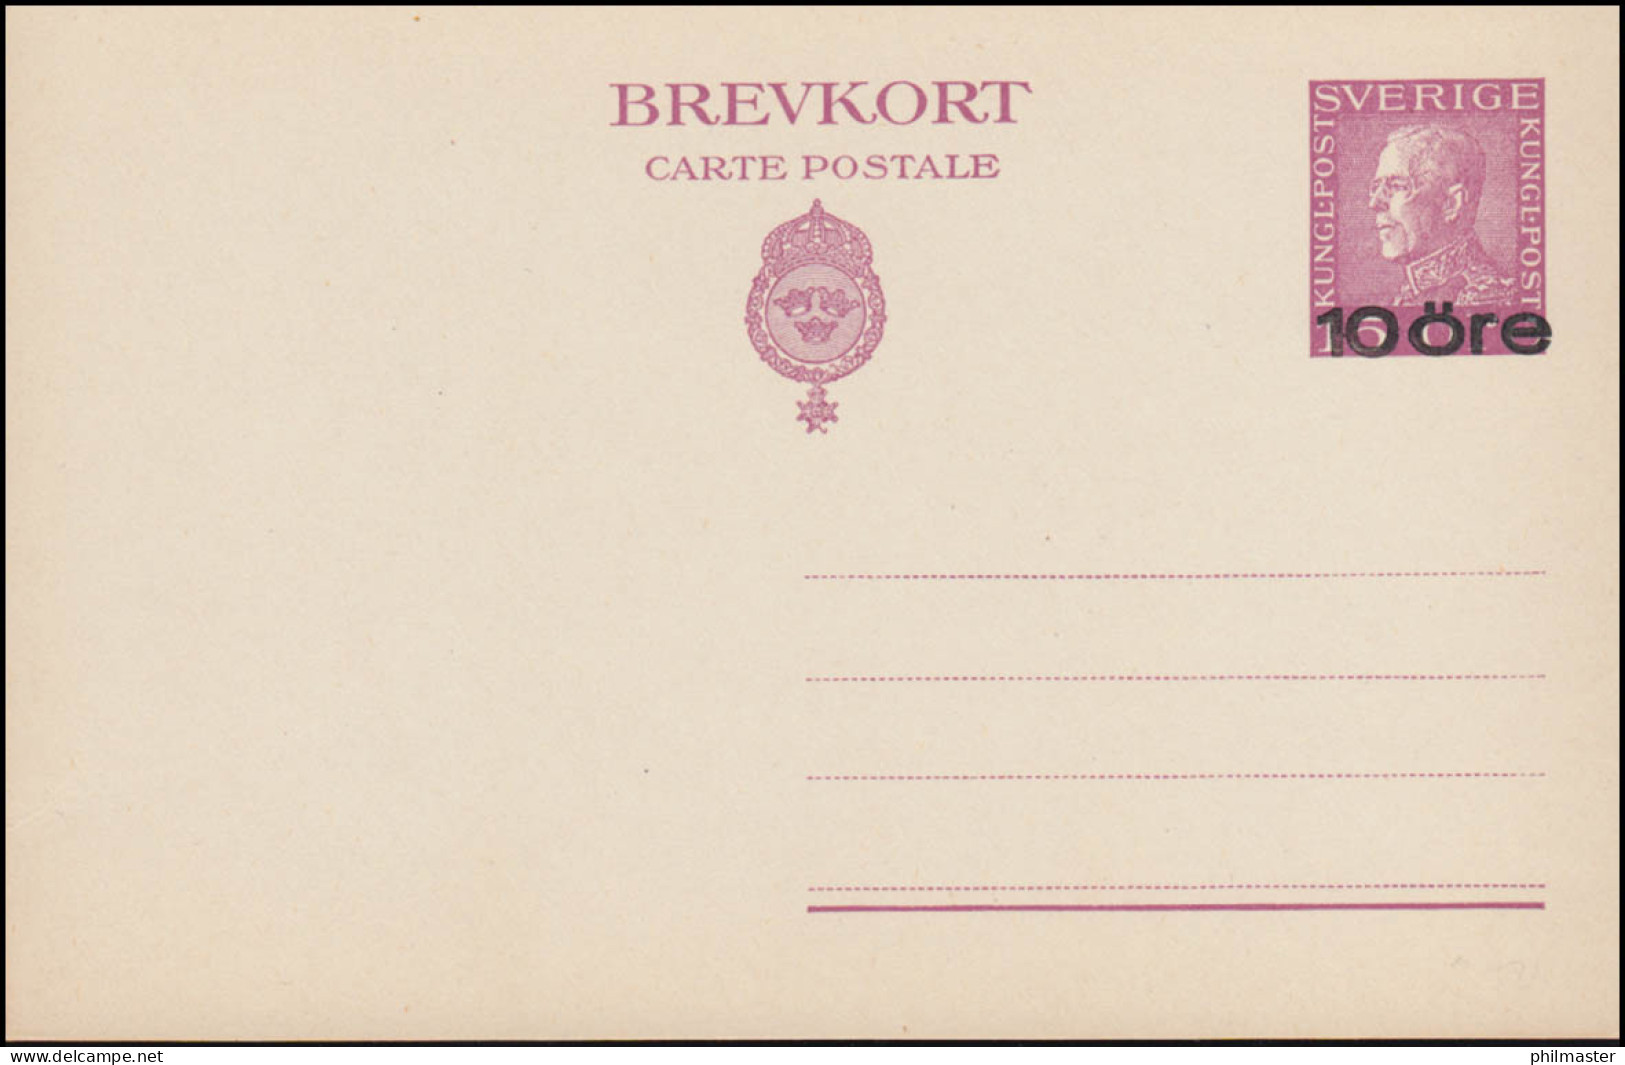 Schweden Postkarte P 46 Brevkort König Gustav 10 Auf 15 Öre, ** Postfrisch - Postal Stationery